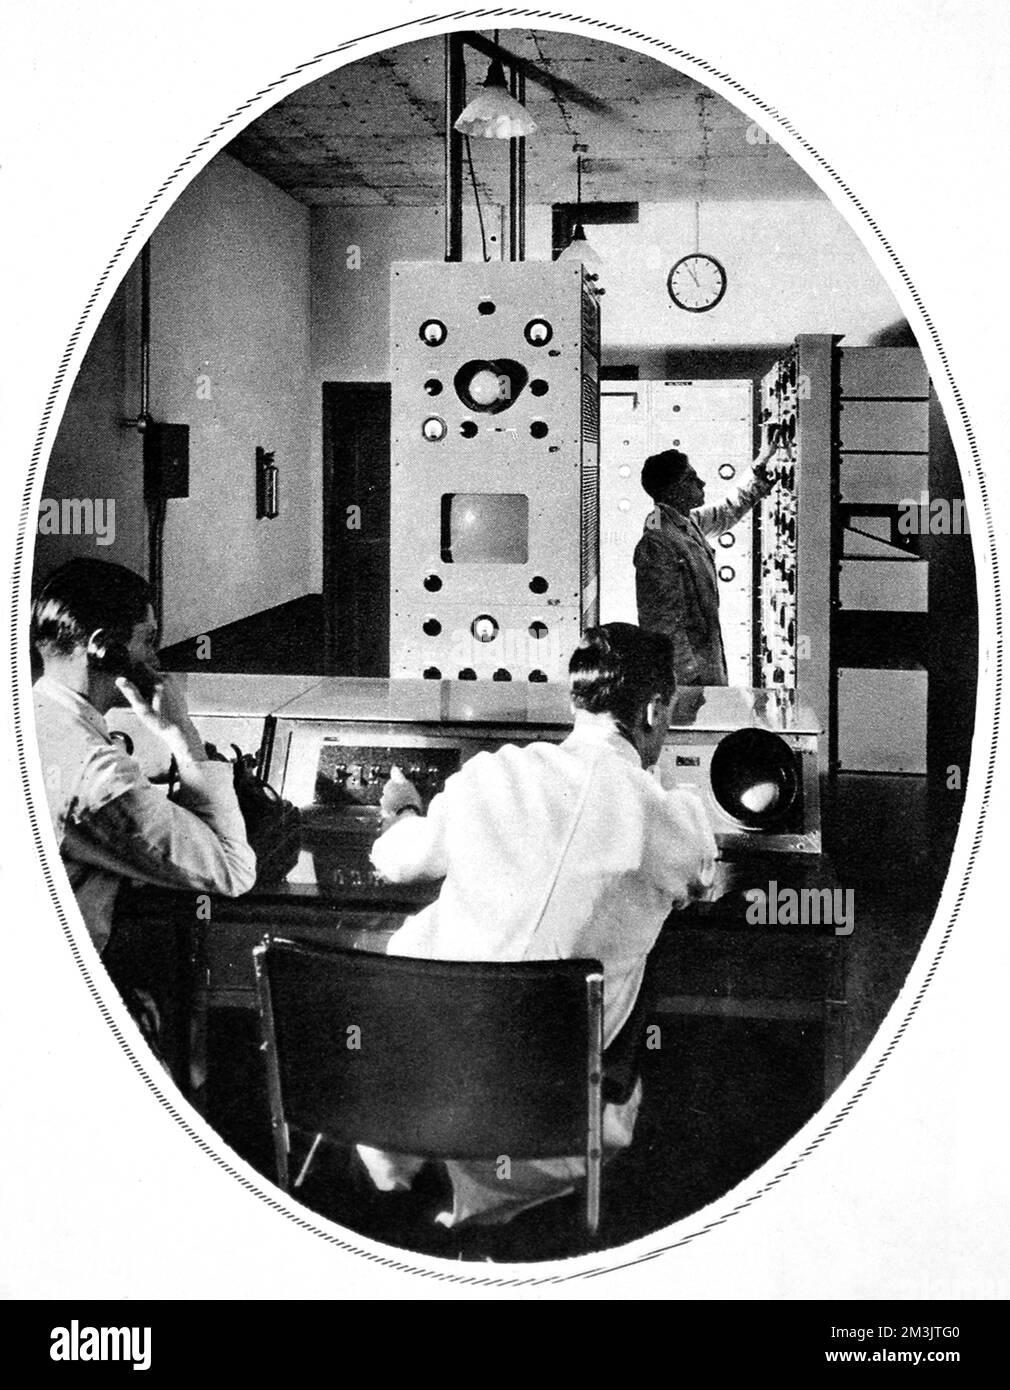 Scène au cœur de la salle de contrôle de l'appareil Baird. Des essais spéciaux de réception du B.B.C d'Alexandra Palace de la télévision et de la parole synchronisées ont été tenus à Olympia par un comité de l'Association des manufacturiers de radio. Les transmissions de jours alternés du palais Alexandra ont été données par les systèmes Baird et Marconi E.M.I. En 1935, le B.B.C expérimente le système de télévision de John Logie Baird et le système E.M.I de Marconi. L'E.M.I a succédé à Baird en 1937. 1936 Banque D'Images